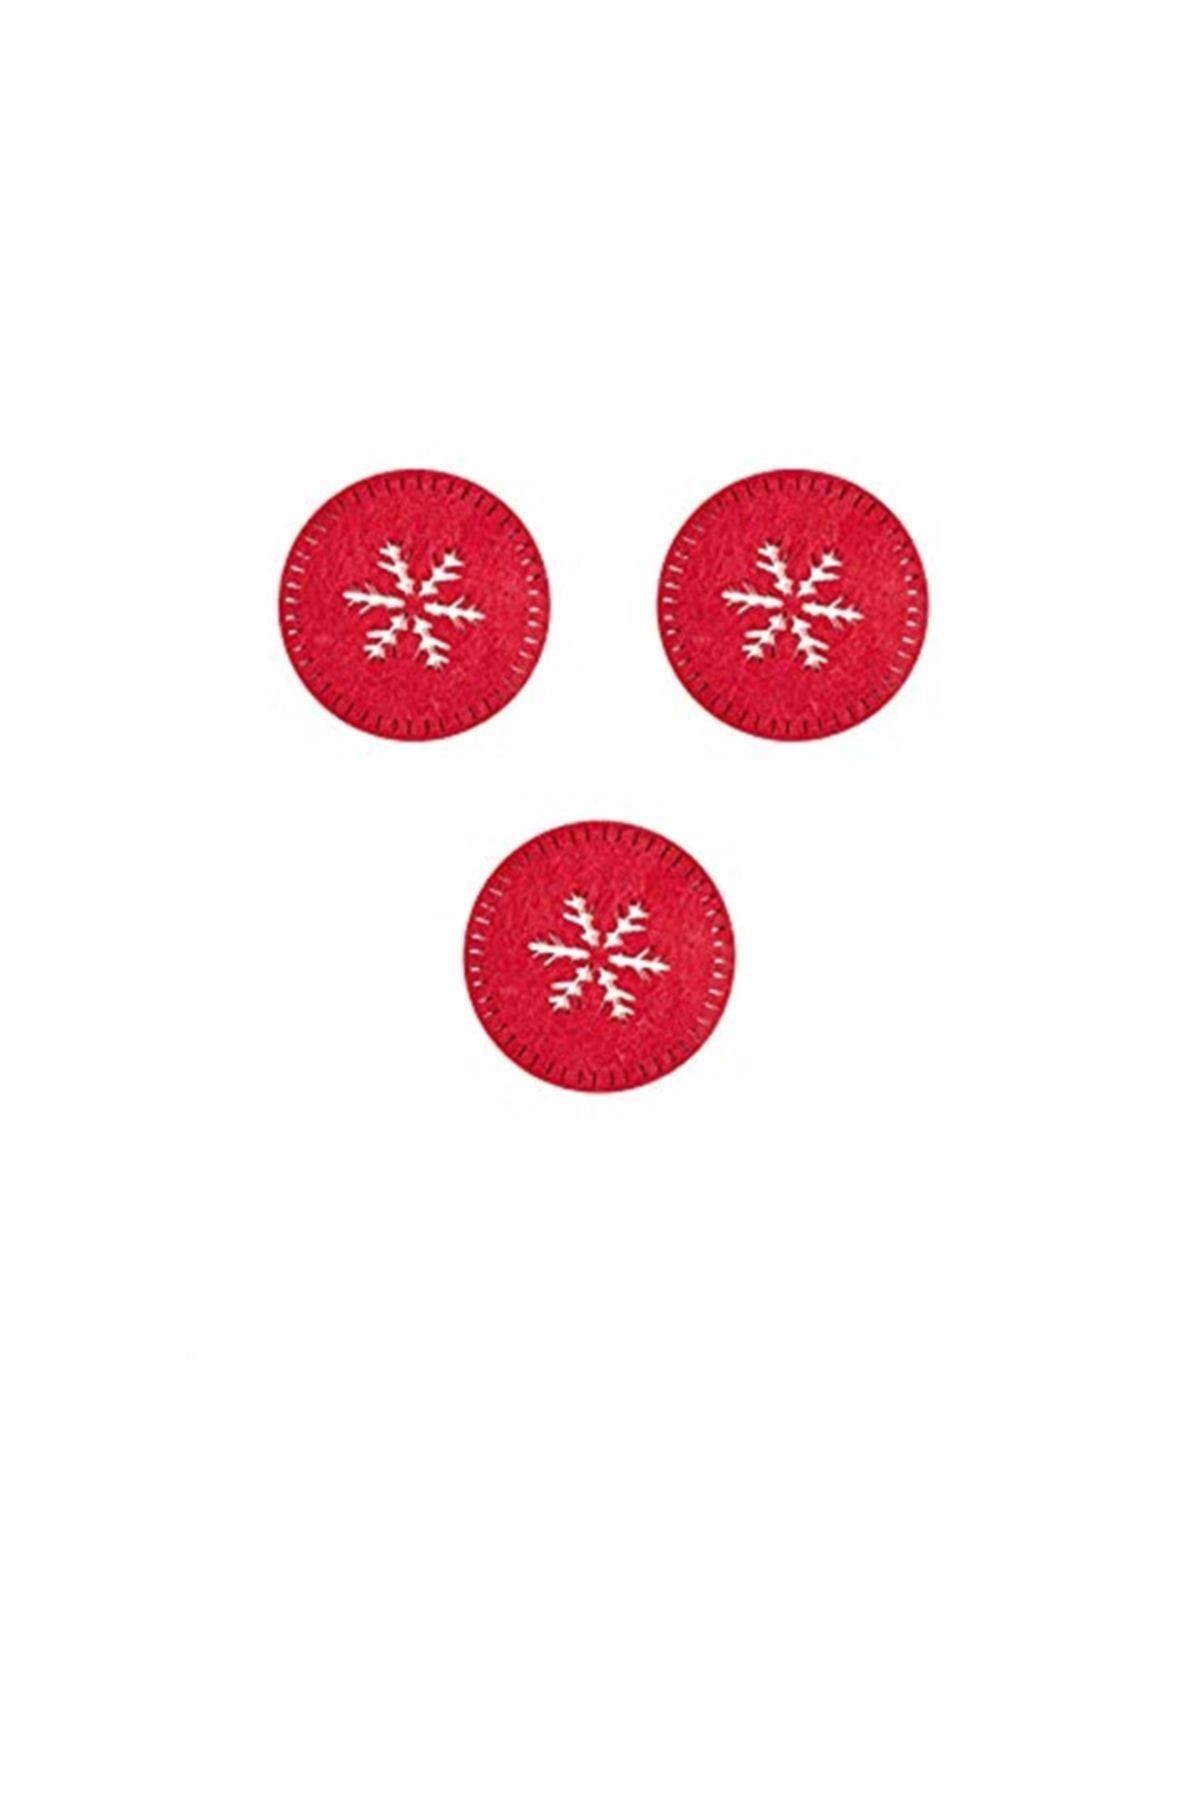 Genel Markalar Och d113 co set 02 3'lü Kırmızı Keçe Yuvarlak Bardak Altlığı